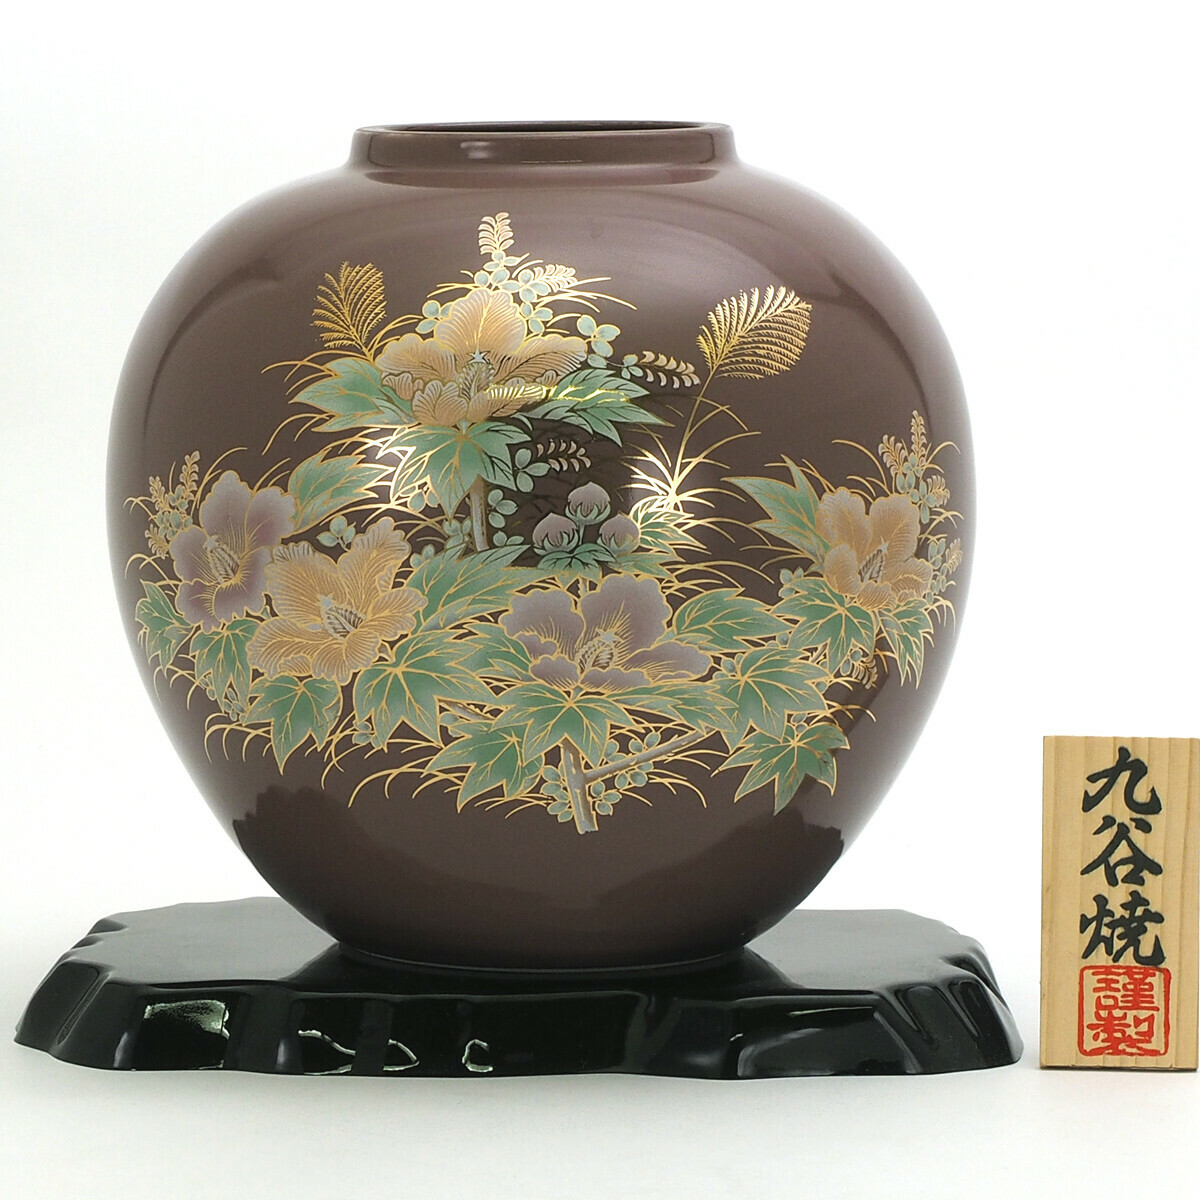 訂購」日本製九谷燒陶瓷花瓶(N170-09)